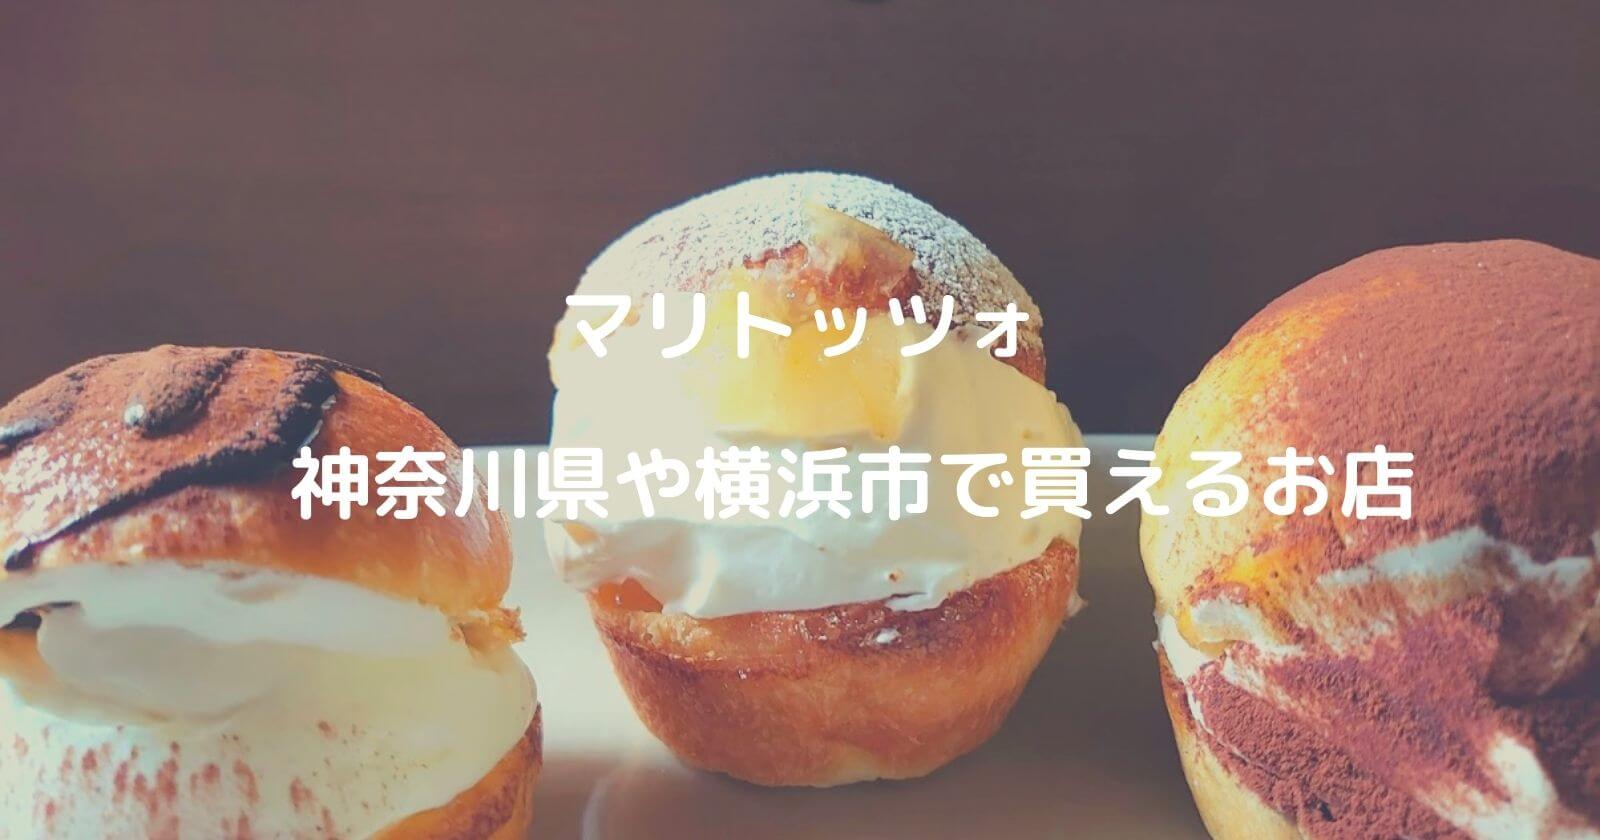 マリトッツォ 神奈川 横浜 で買える人気のパン屋 お店10選